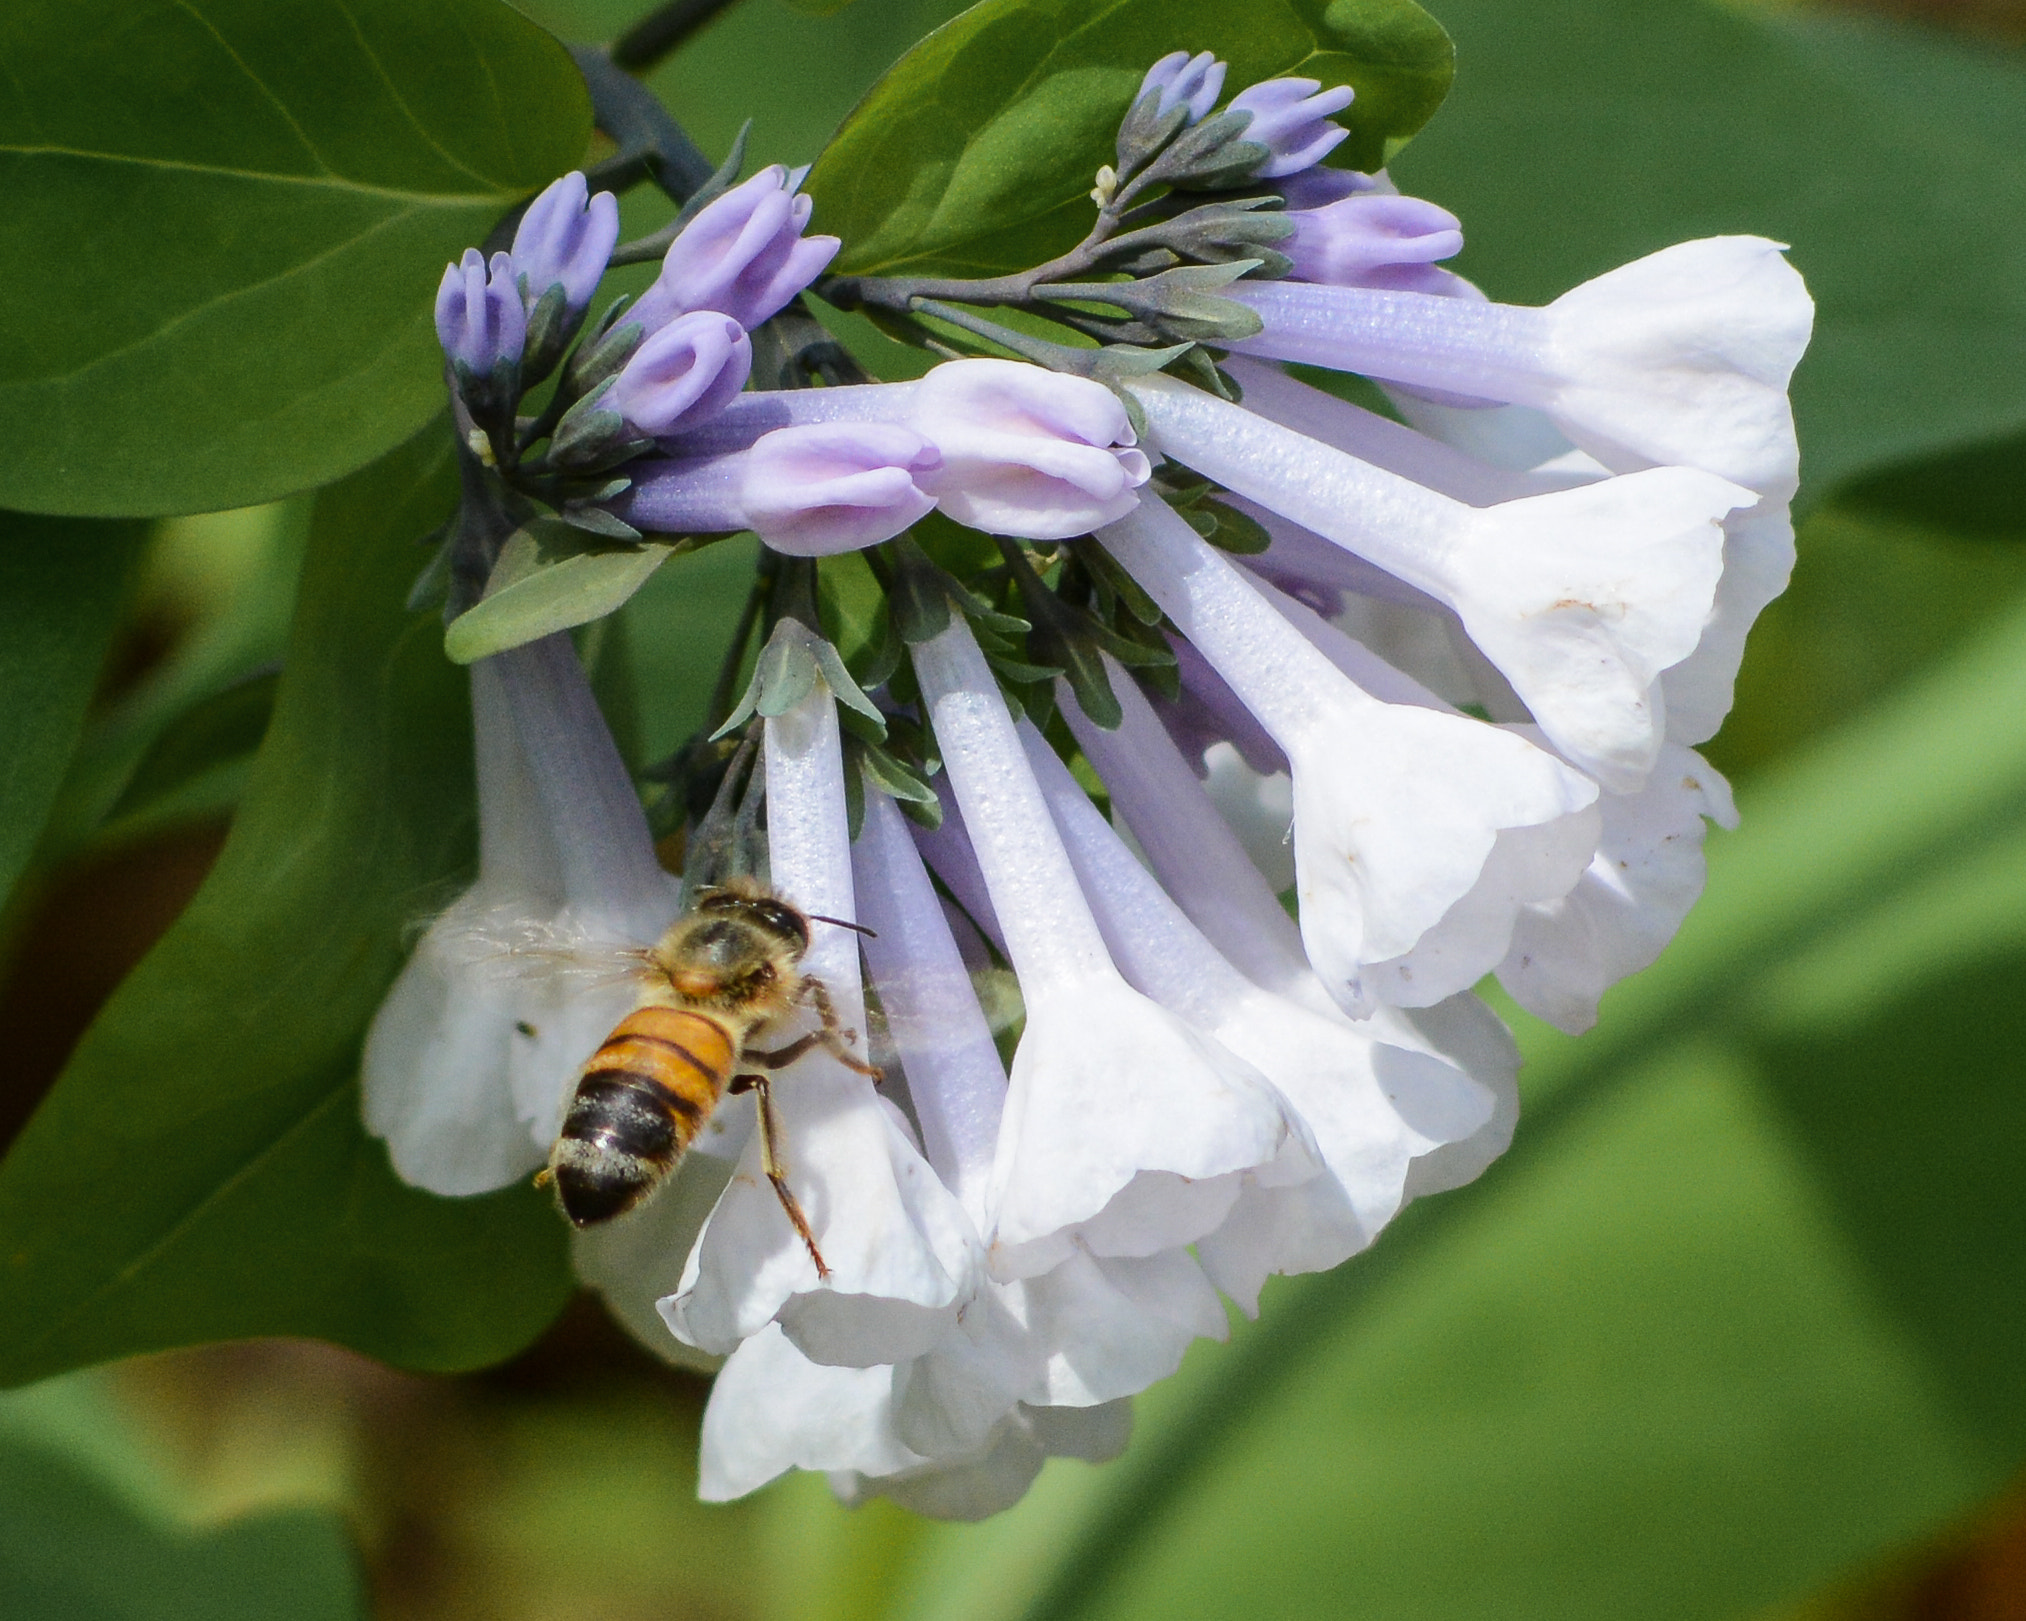 Nikon D7100 + AF Nikkor 70-210mm f/4-5.6 sample photo. Honeybee on virginia bluebells photography